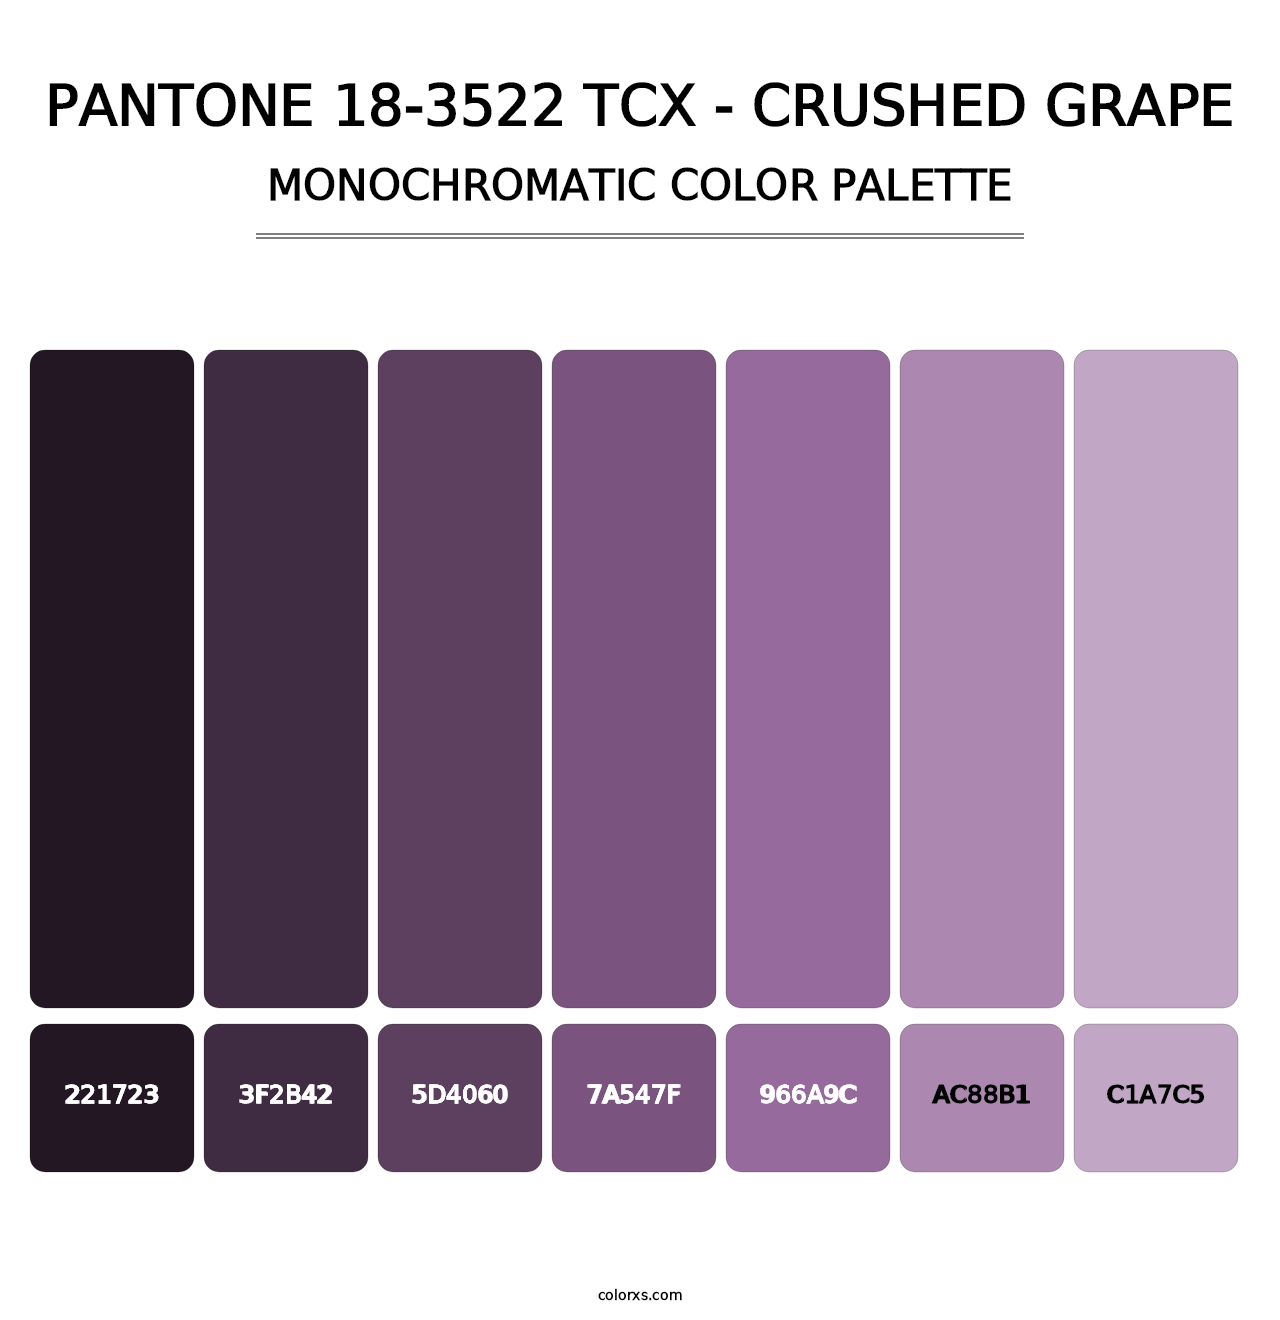 PANTONE 18-3522 TCX - Crushed Grape - Monochromatic Color Palette